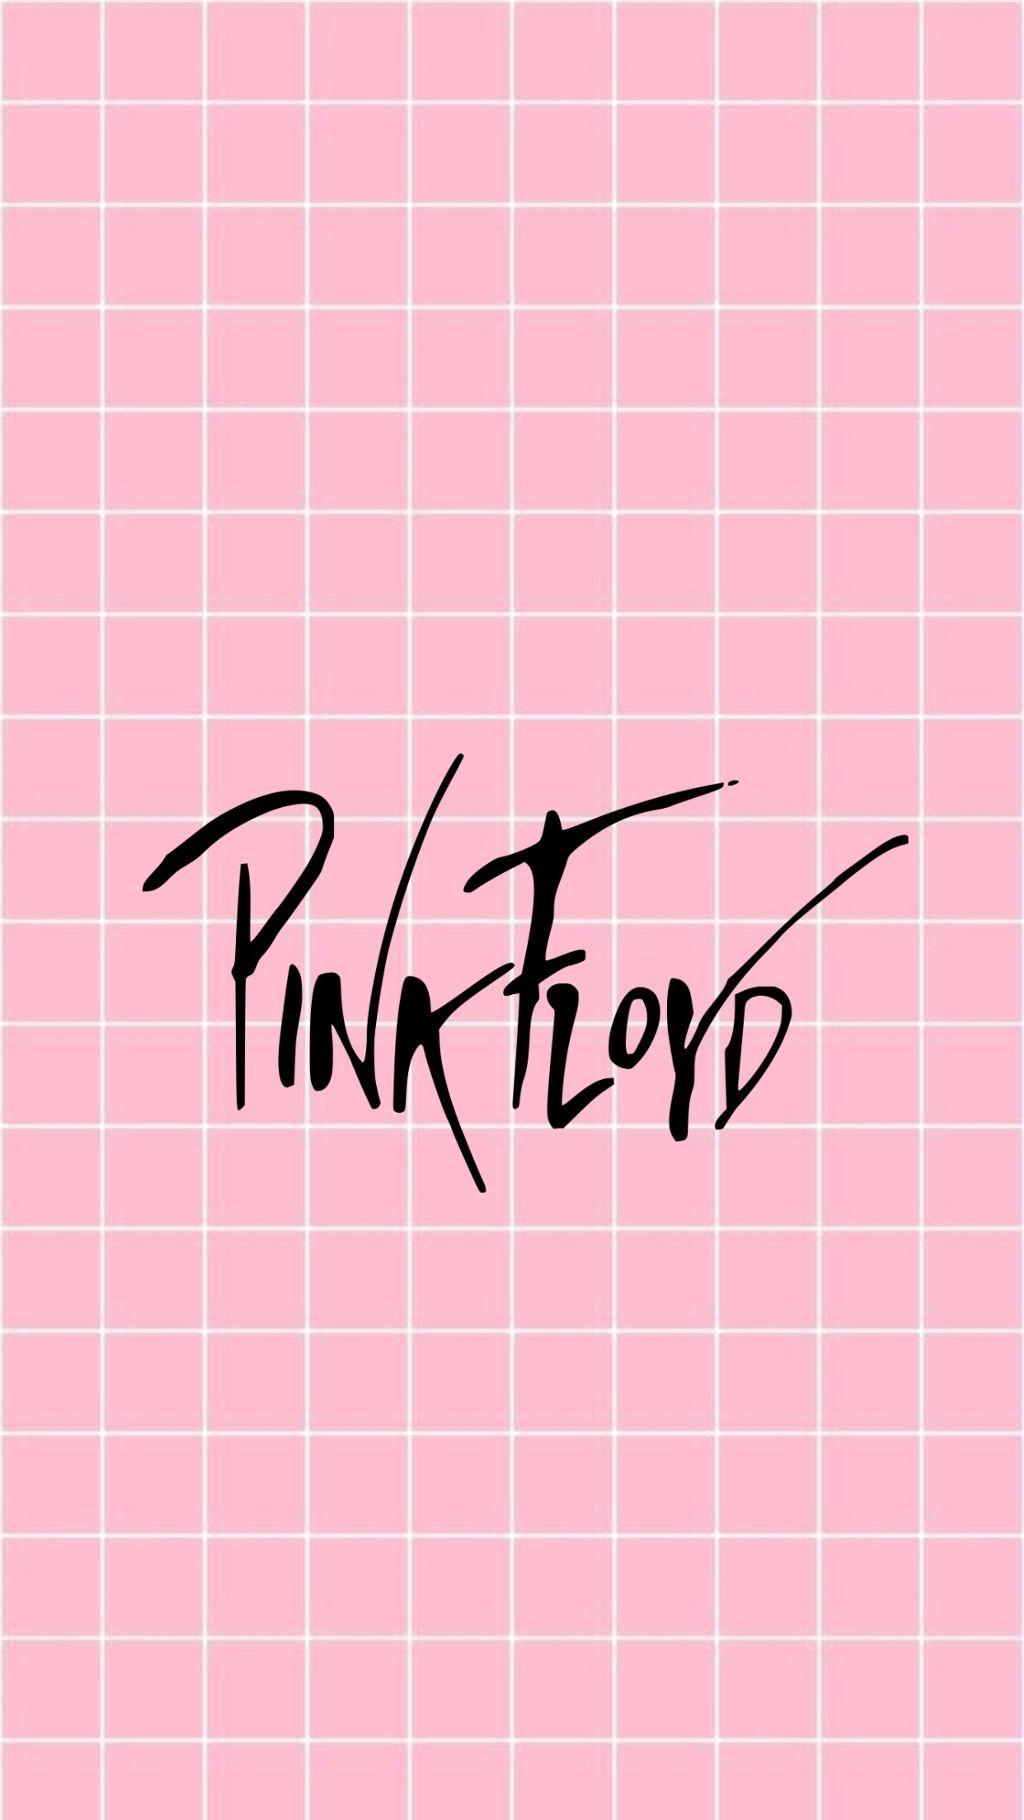 lockscreen wallpaper pink pinkfloyd tumblr